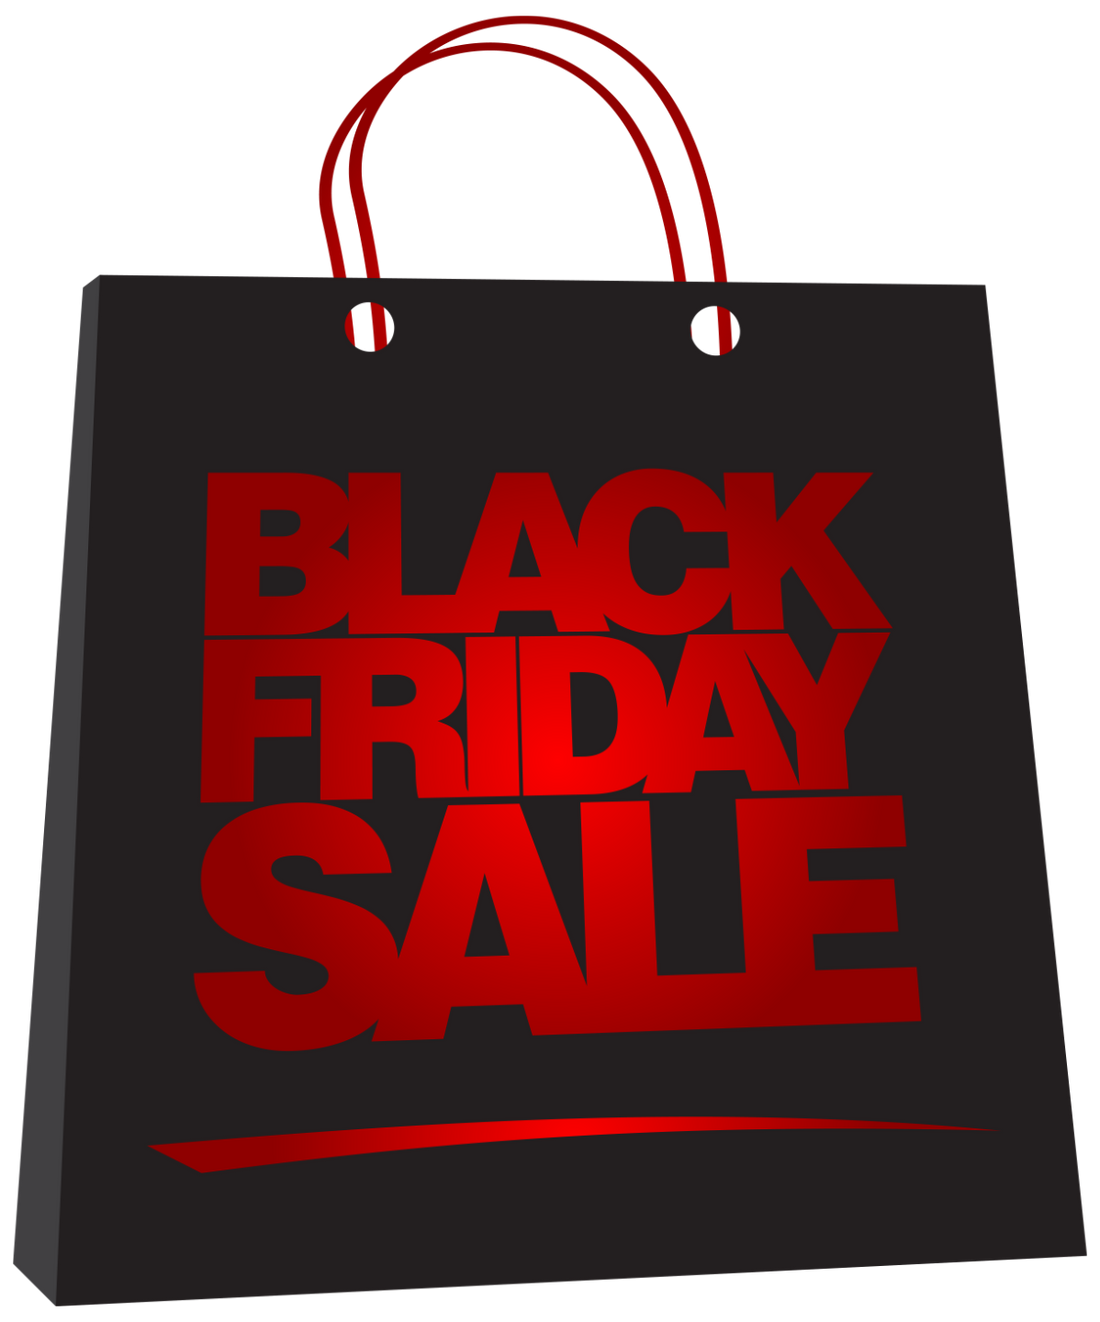 Black Friday Sale Week - November 23-27